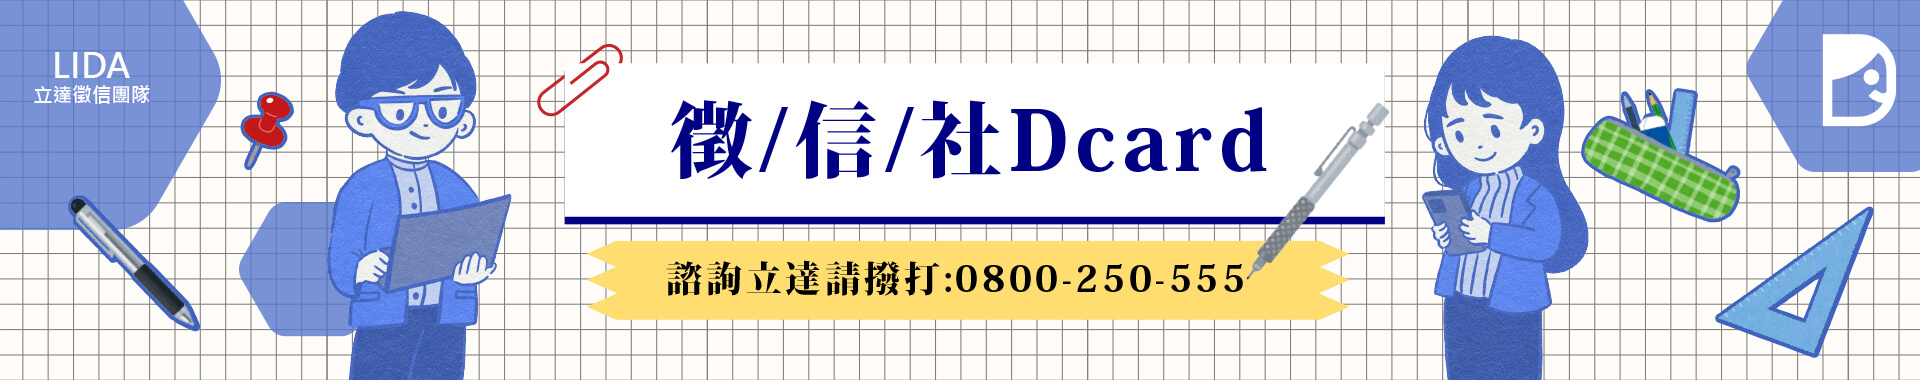 徵信社Dcard